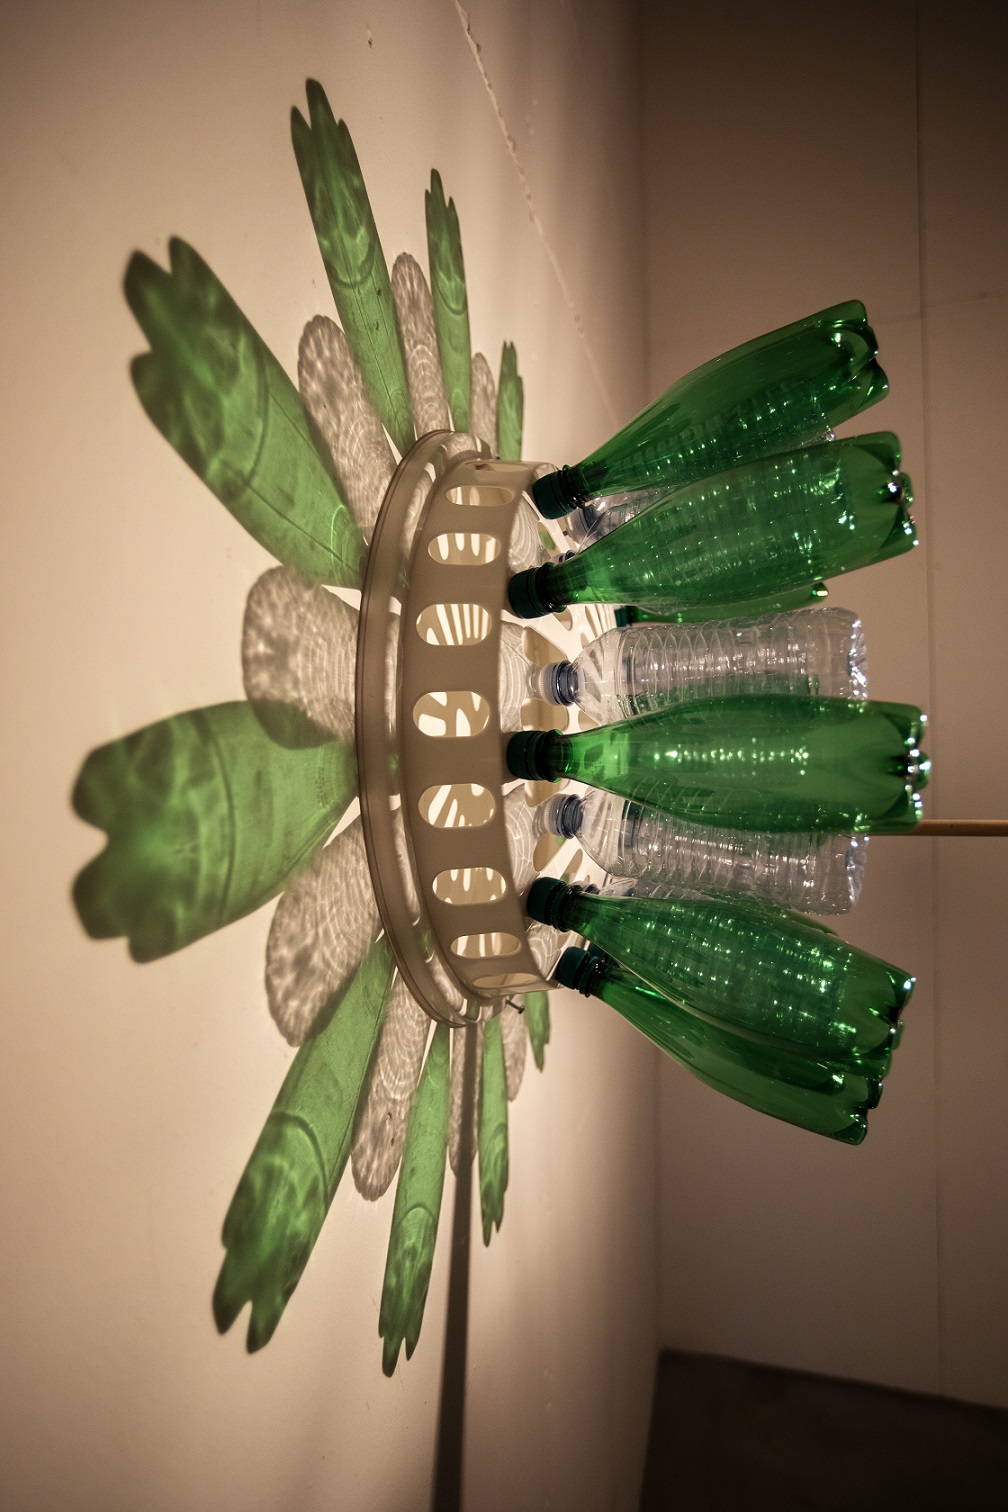 Gröna och genomskinliga plastflaskor monterade stående på ett tvättkorgslock. Rummets ljus är riktat mot locket som är monterat emot en vit vägg där flaskorna skapar ett mandala mönster mot väggen.